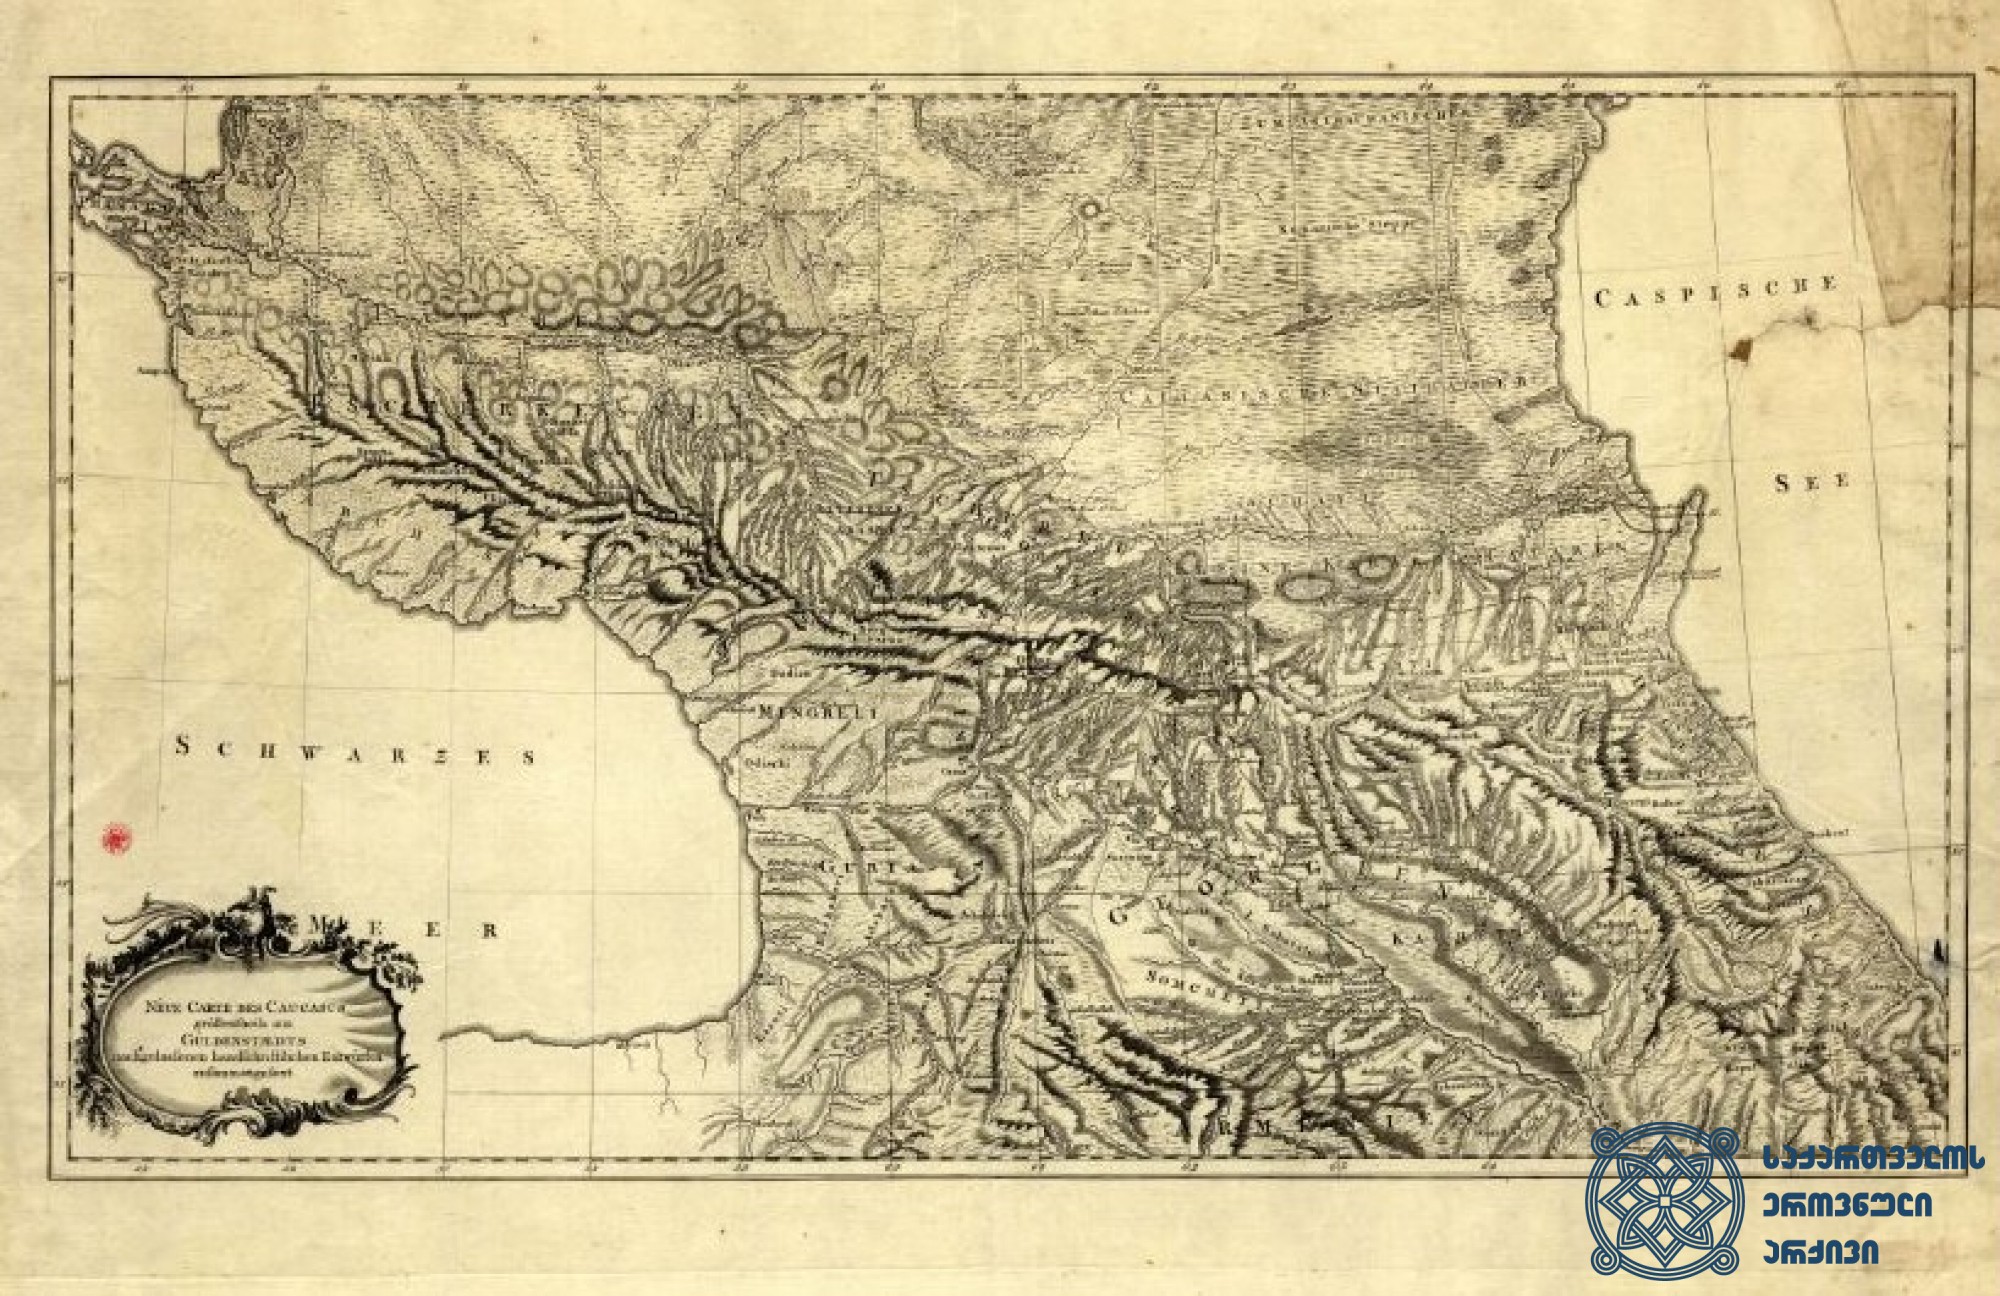 ამიერკავკასია. <br>
რუკა იოჰან ანტონ გიულდენშტედტის ექსპედიციიდან. <br>
(რუკა აღებულია ინტერნეტრესურსებიდან)